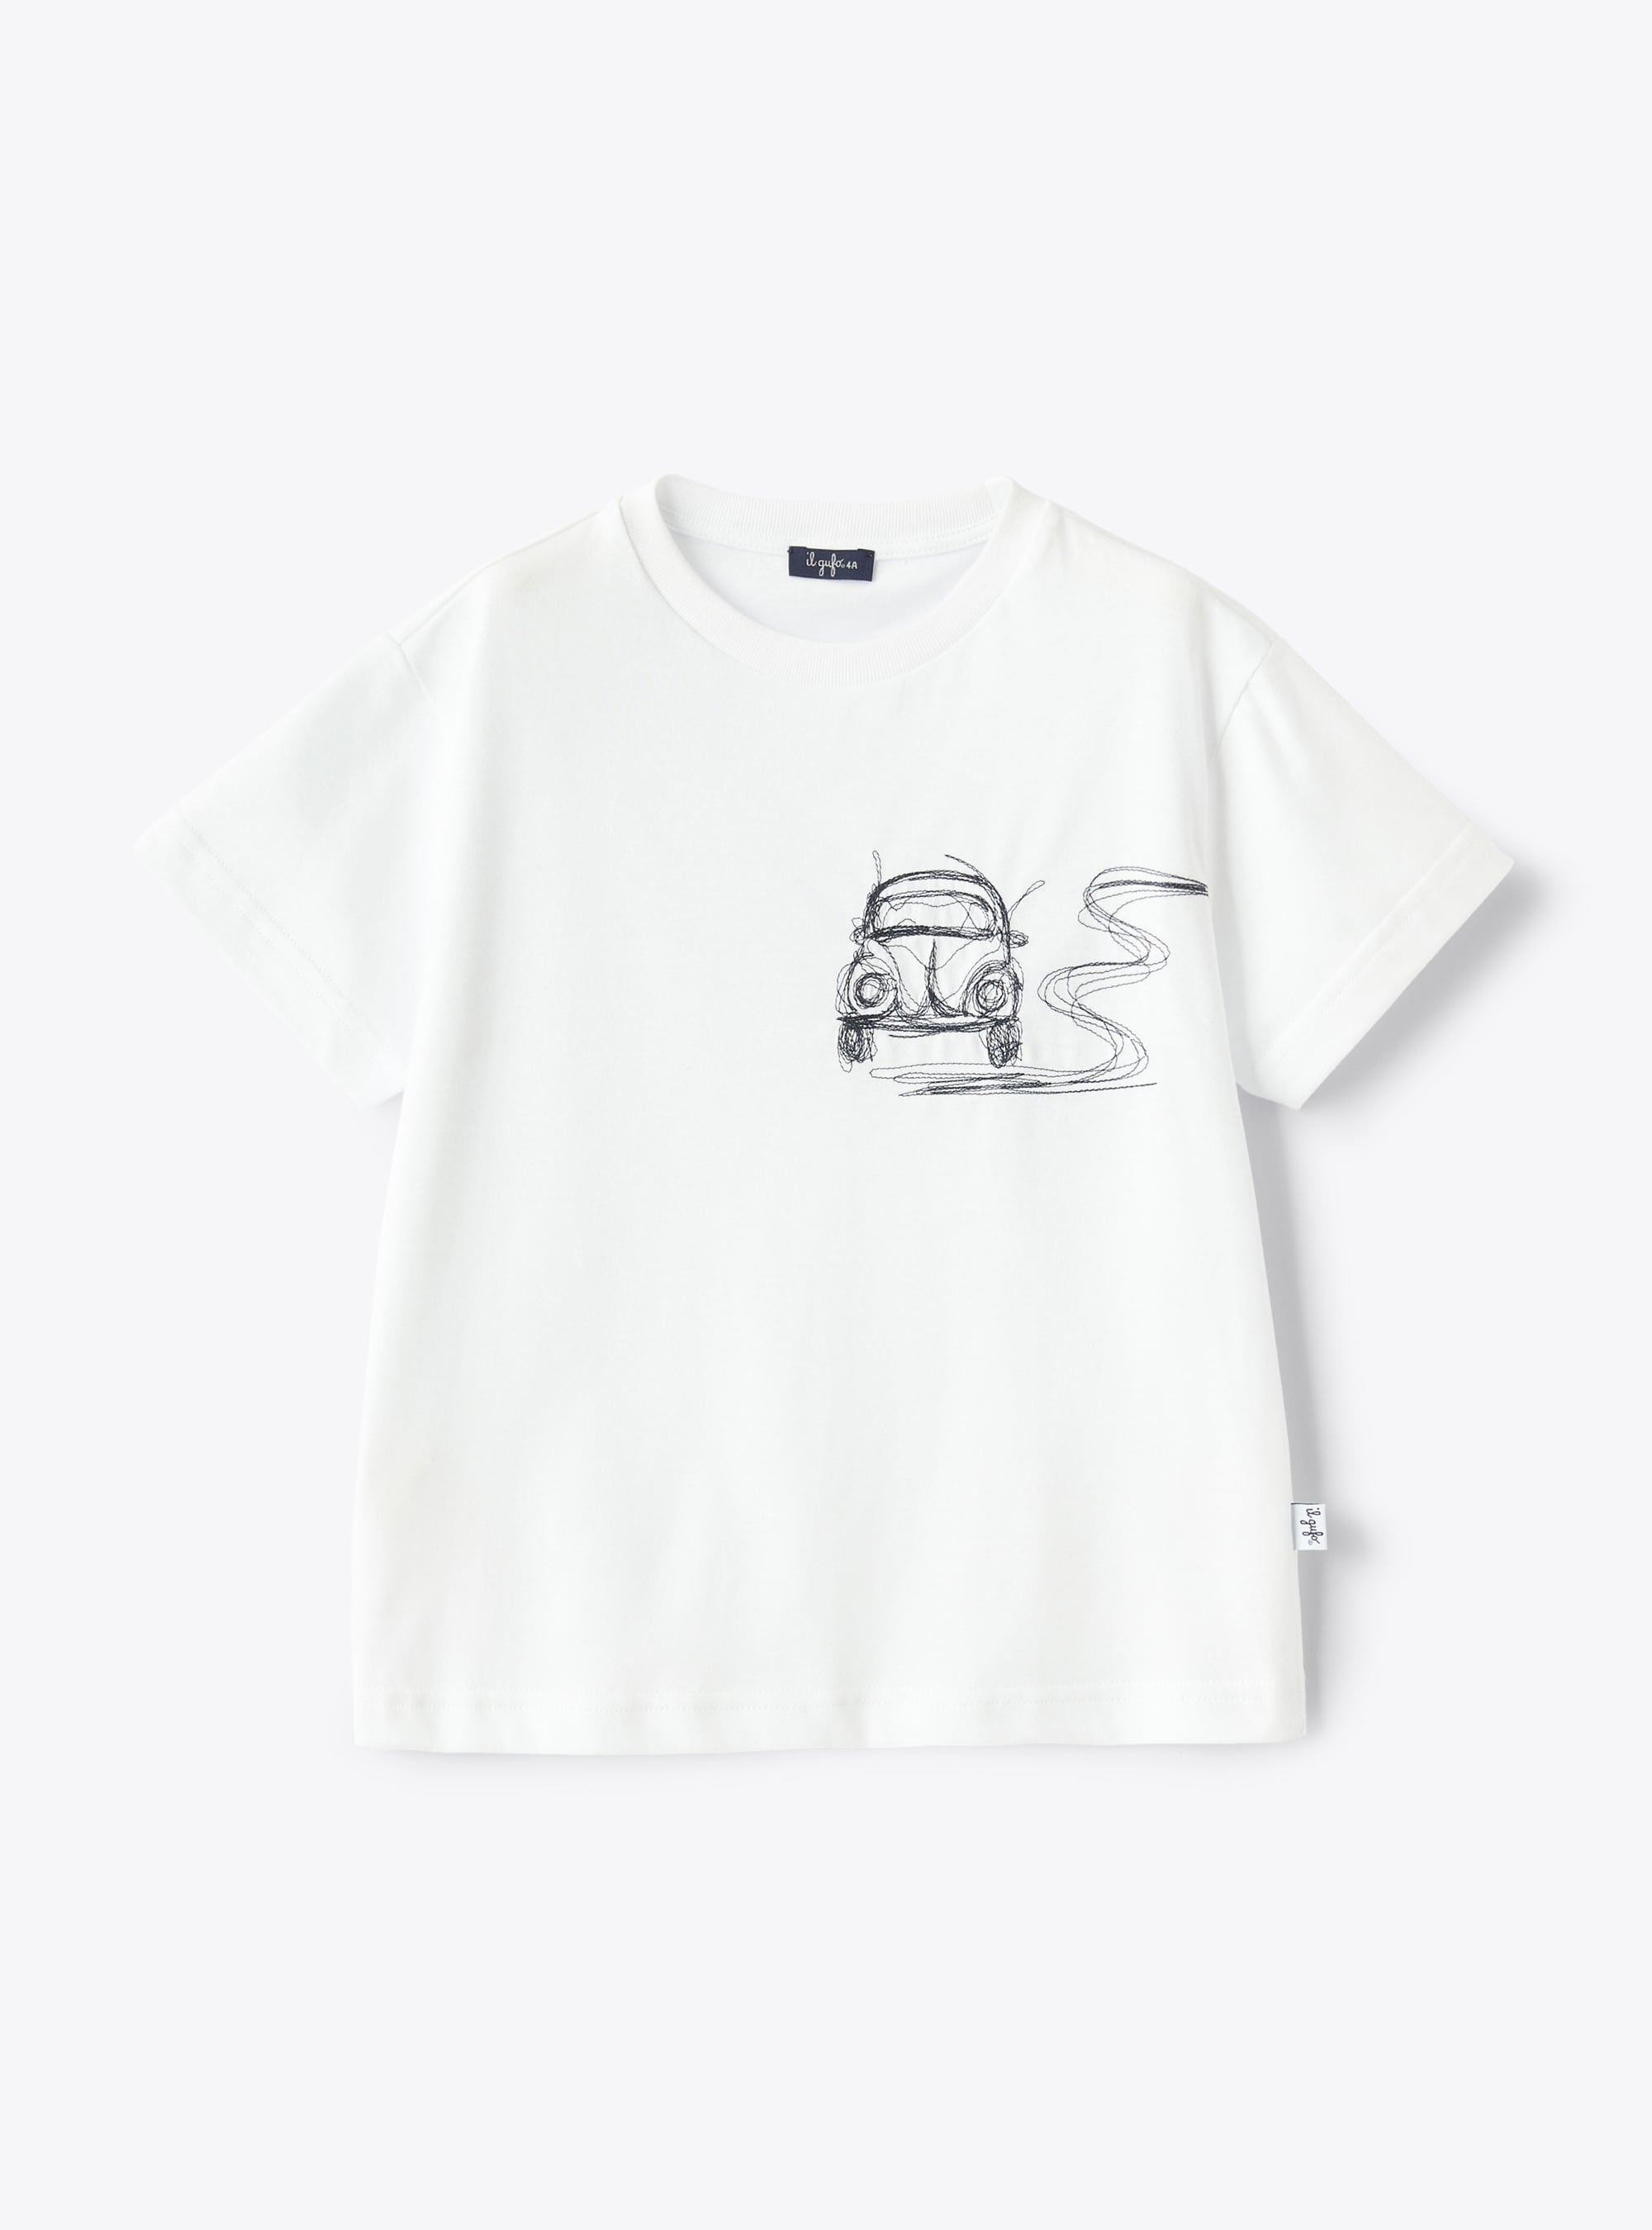 T-shirt blanc avec broderie voiture bleue - T-shirts - Il Gufo